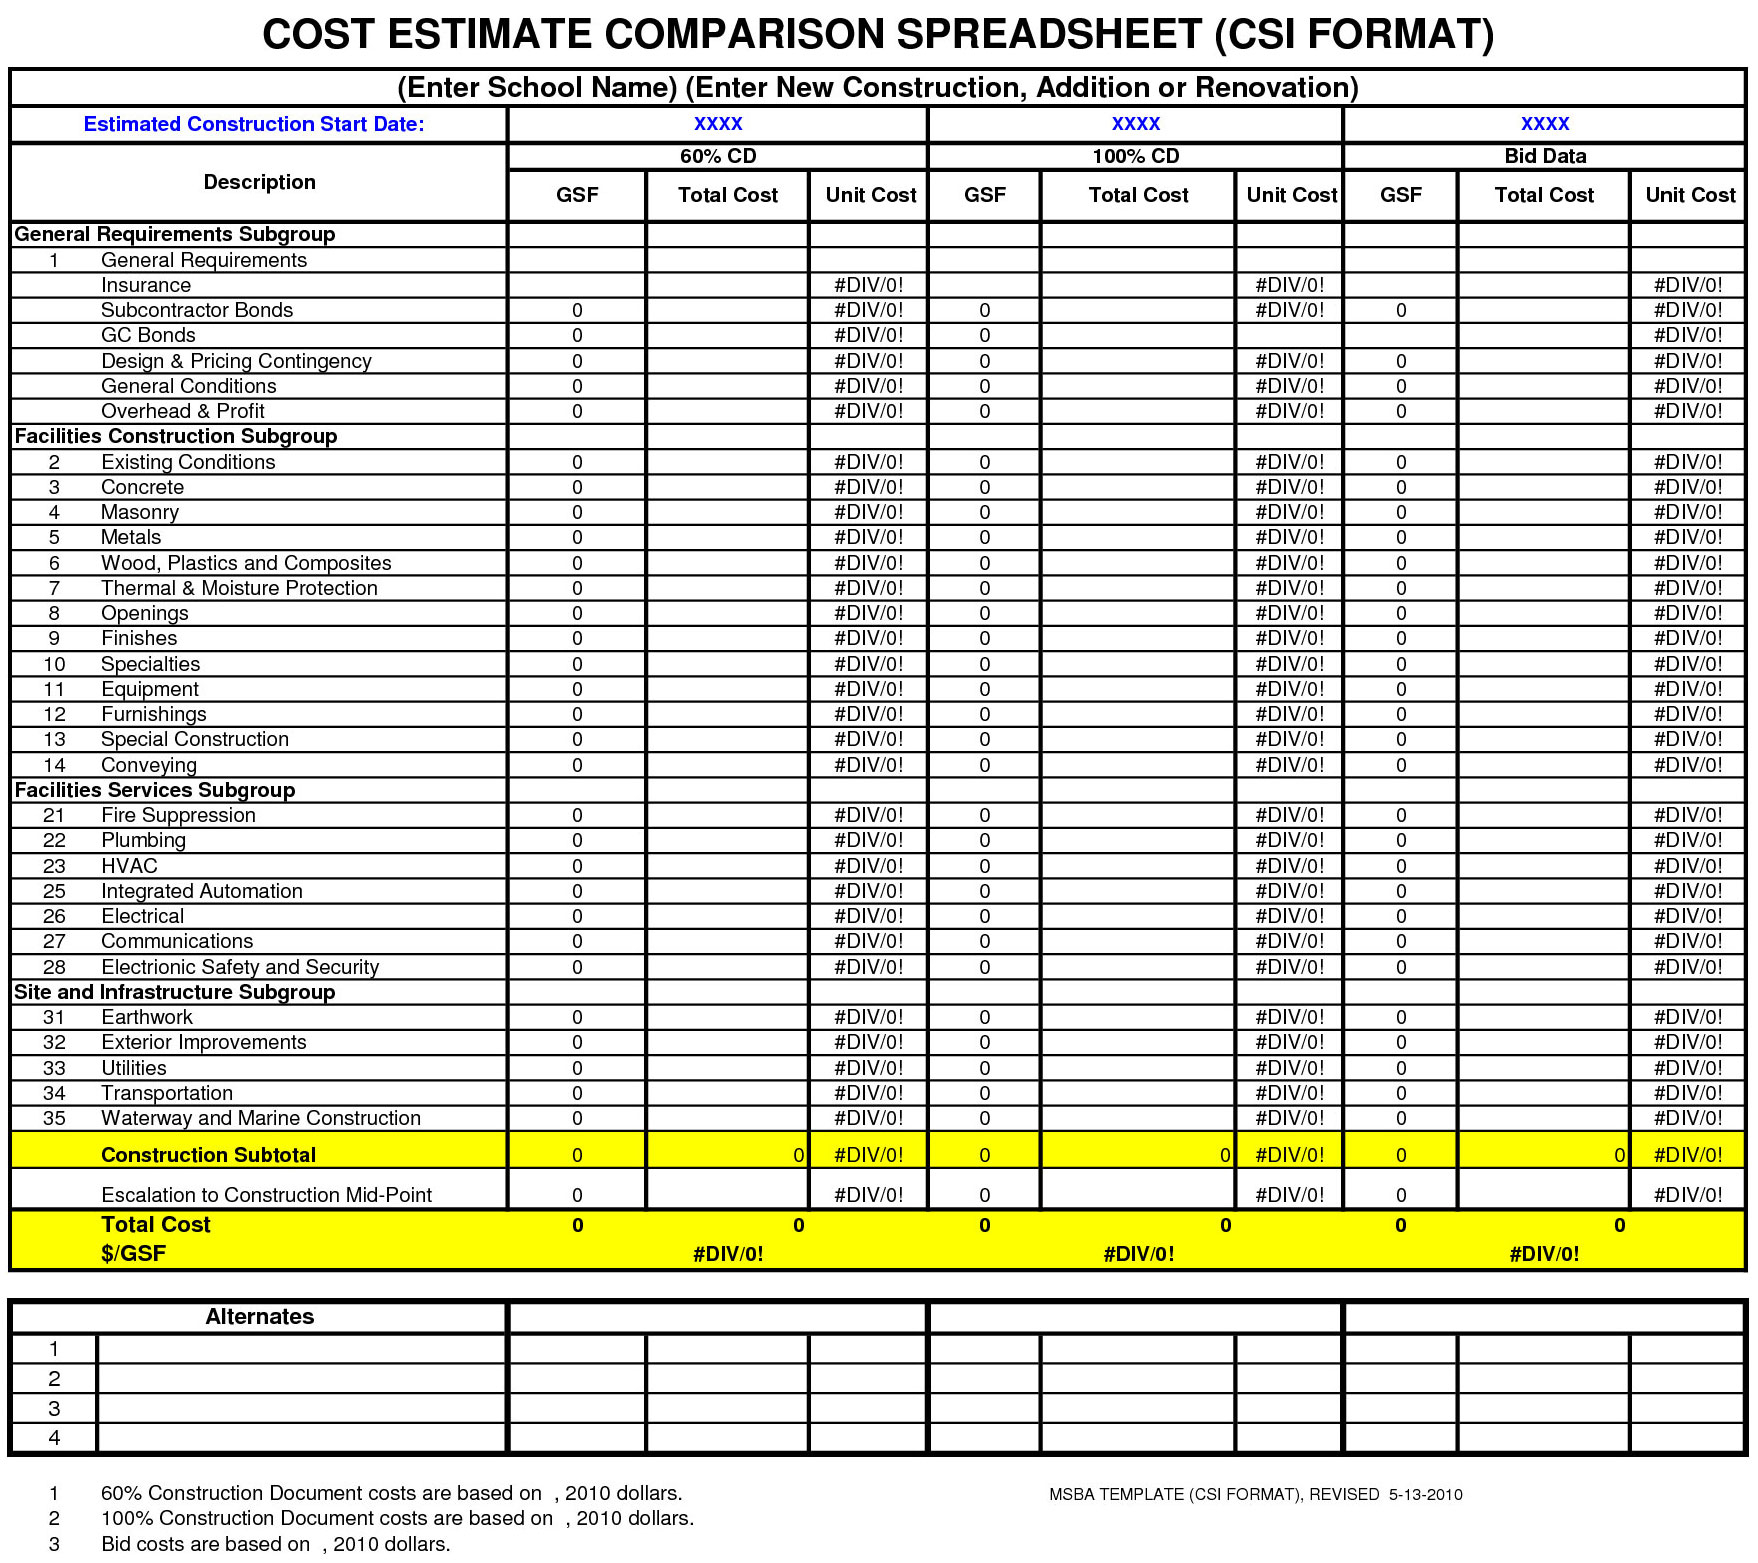 Bid Comparison Spreadsheet intended for Cost Estimate Comparison